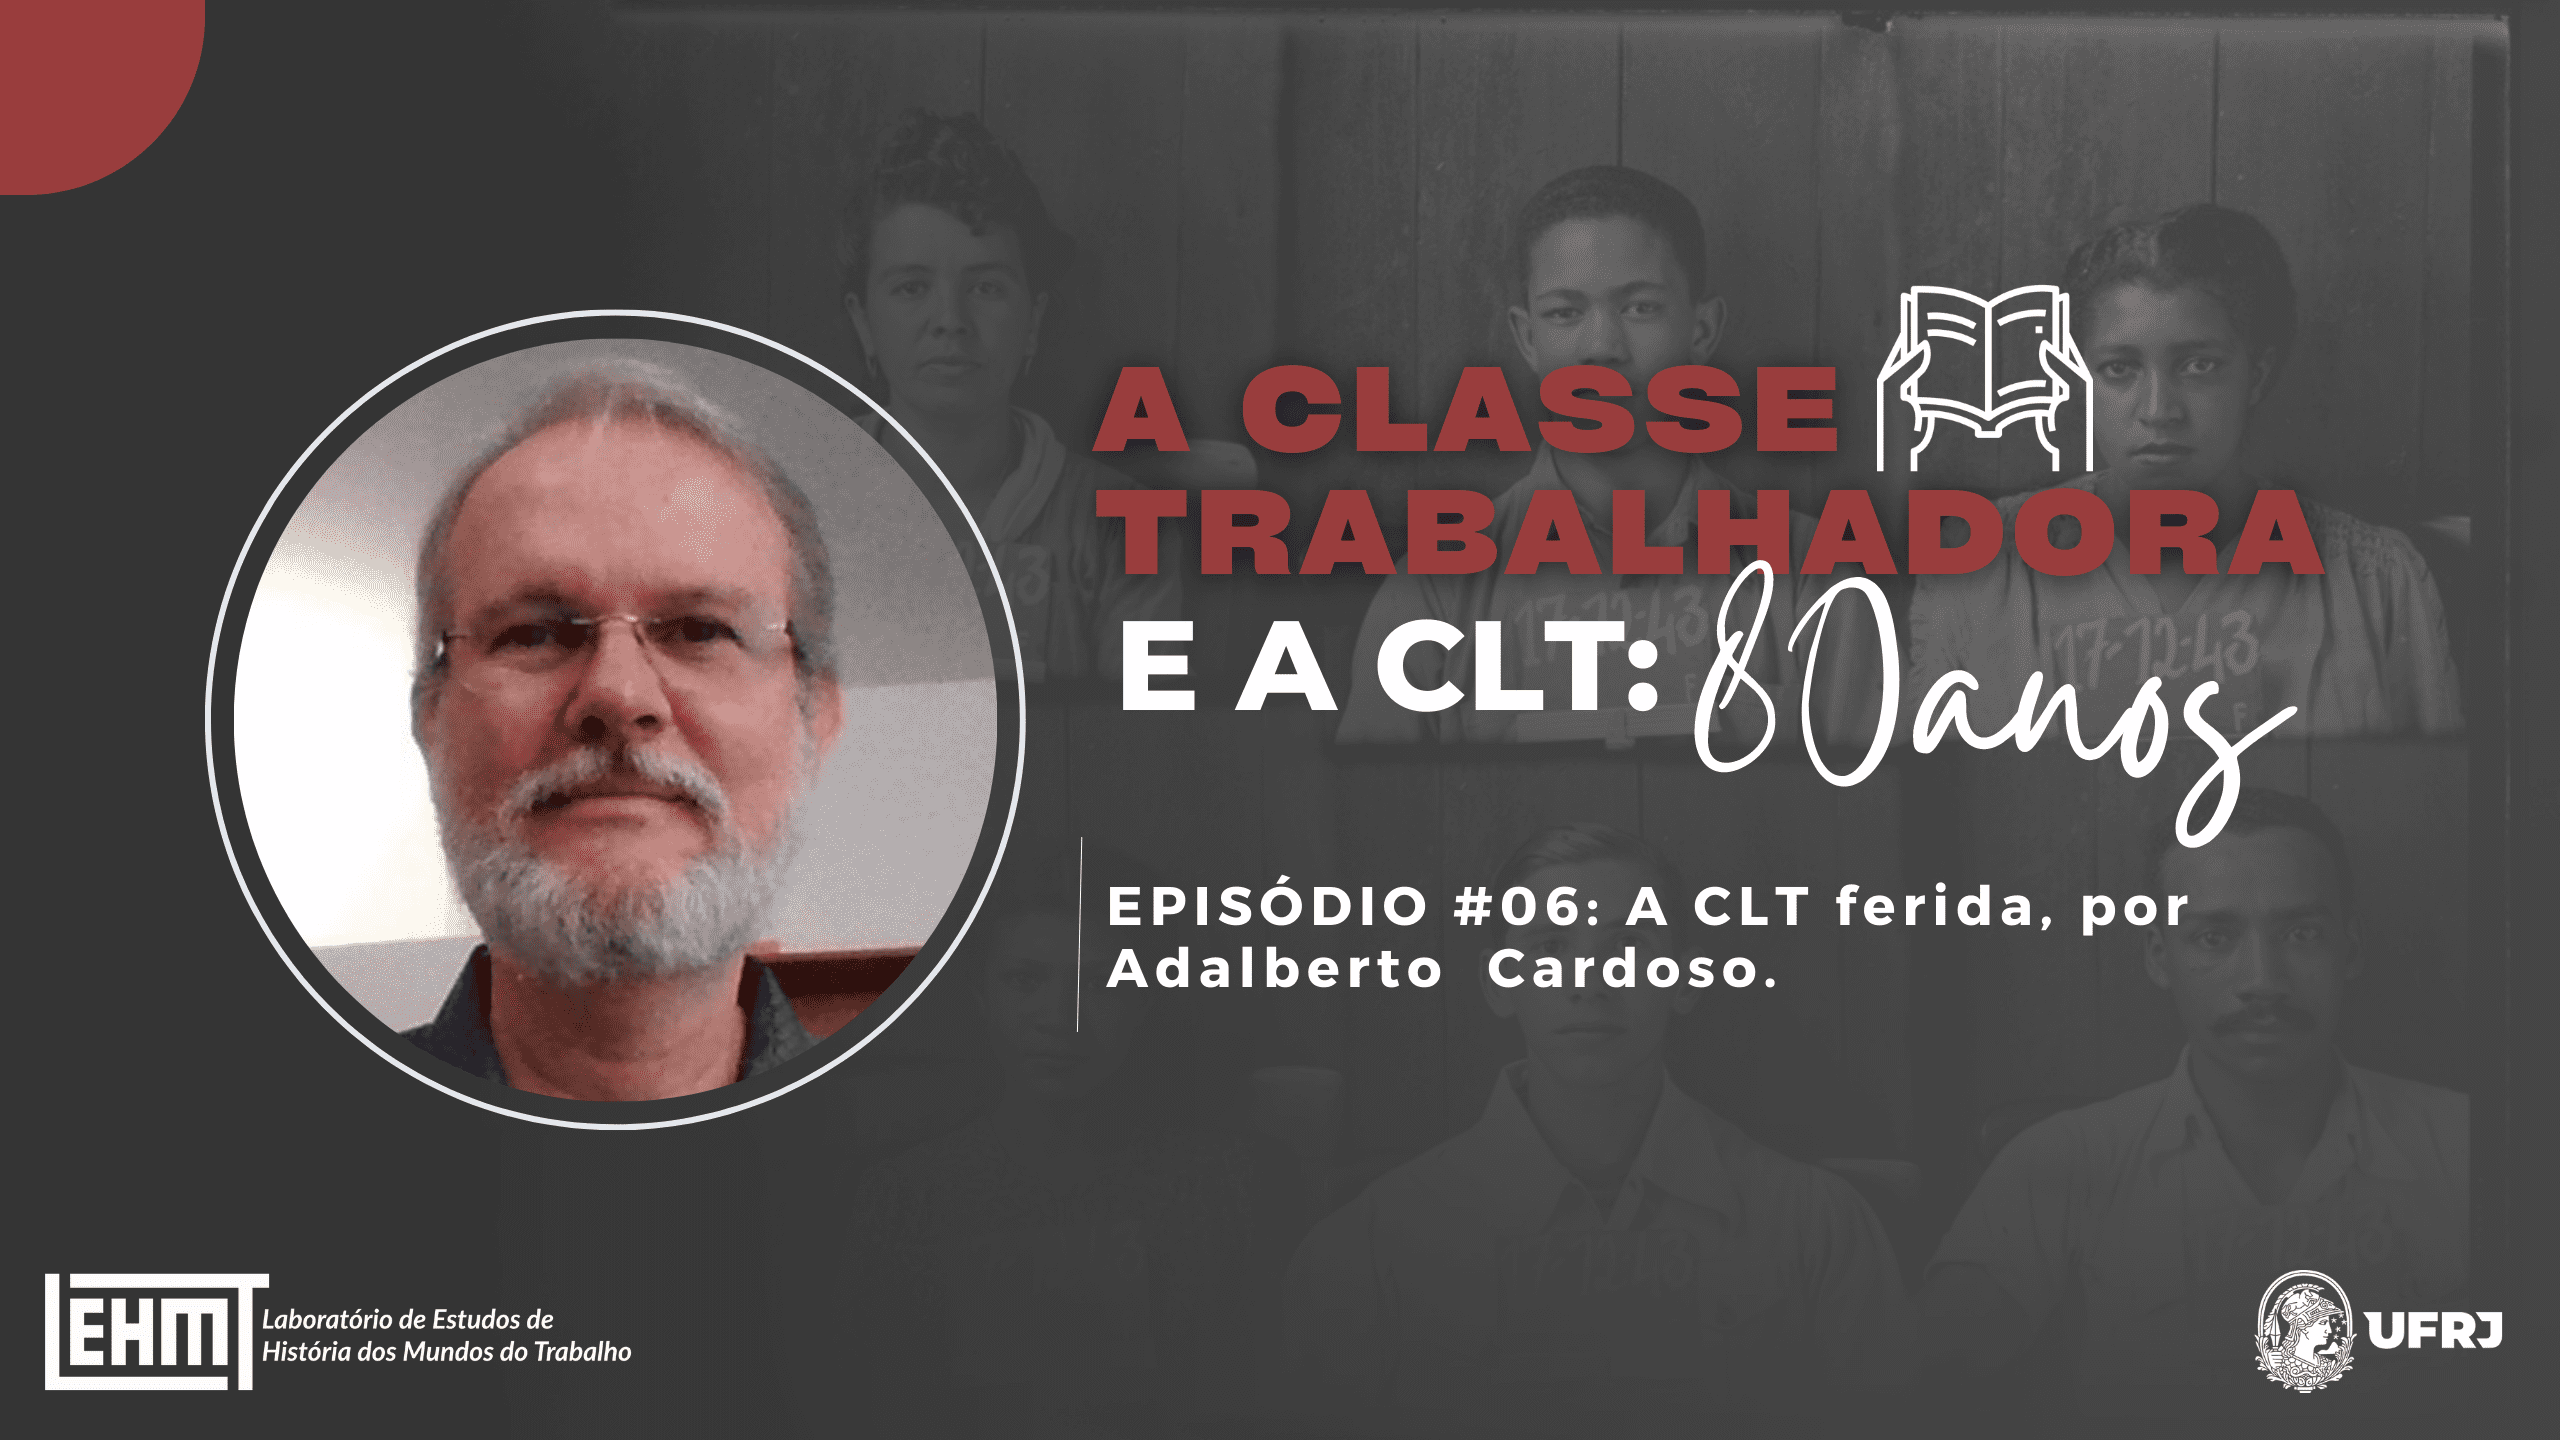 LABUTA – A Classe Trabalhadora e a CLT: 80 anos #06 – Adalberto Cardoso